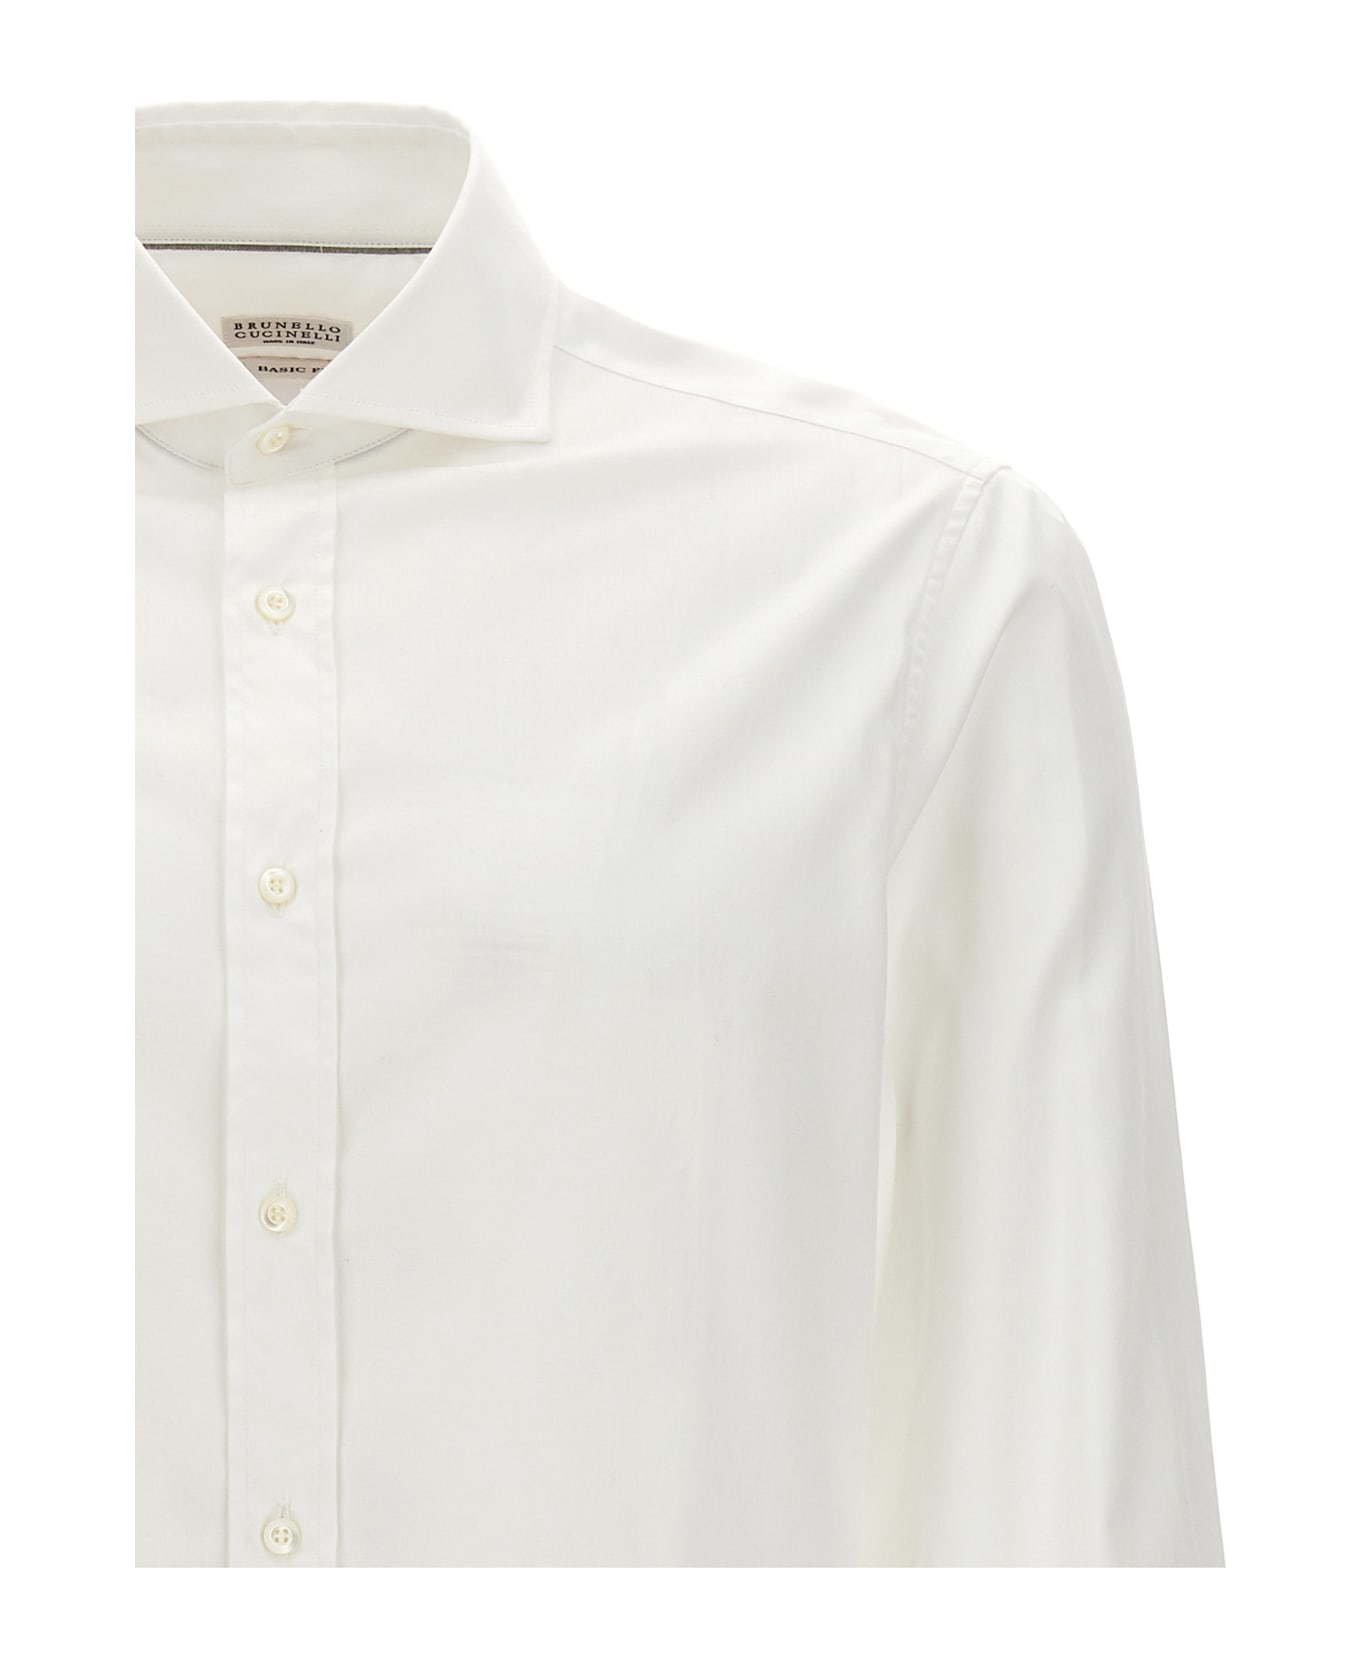 Brunello Cucinelli Poplin Shirt - White シャツ